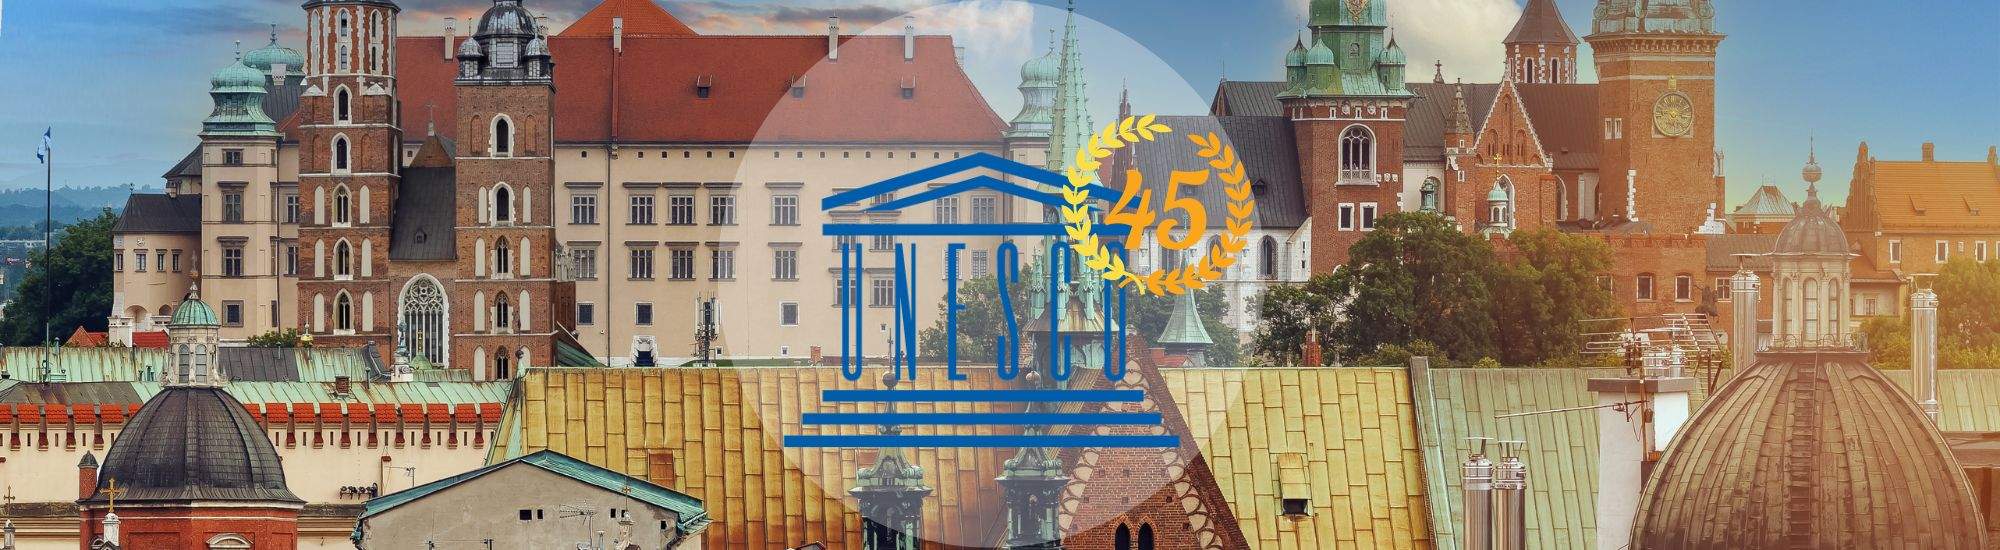 Cracovie célèbre son 45e anniversaire au patrimoine mondial de l'UNESCO